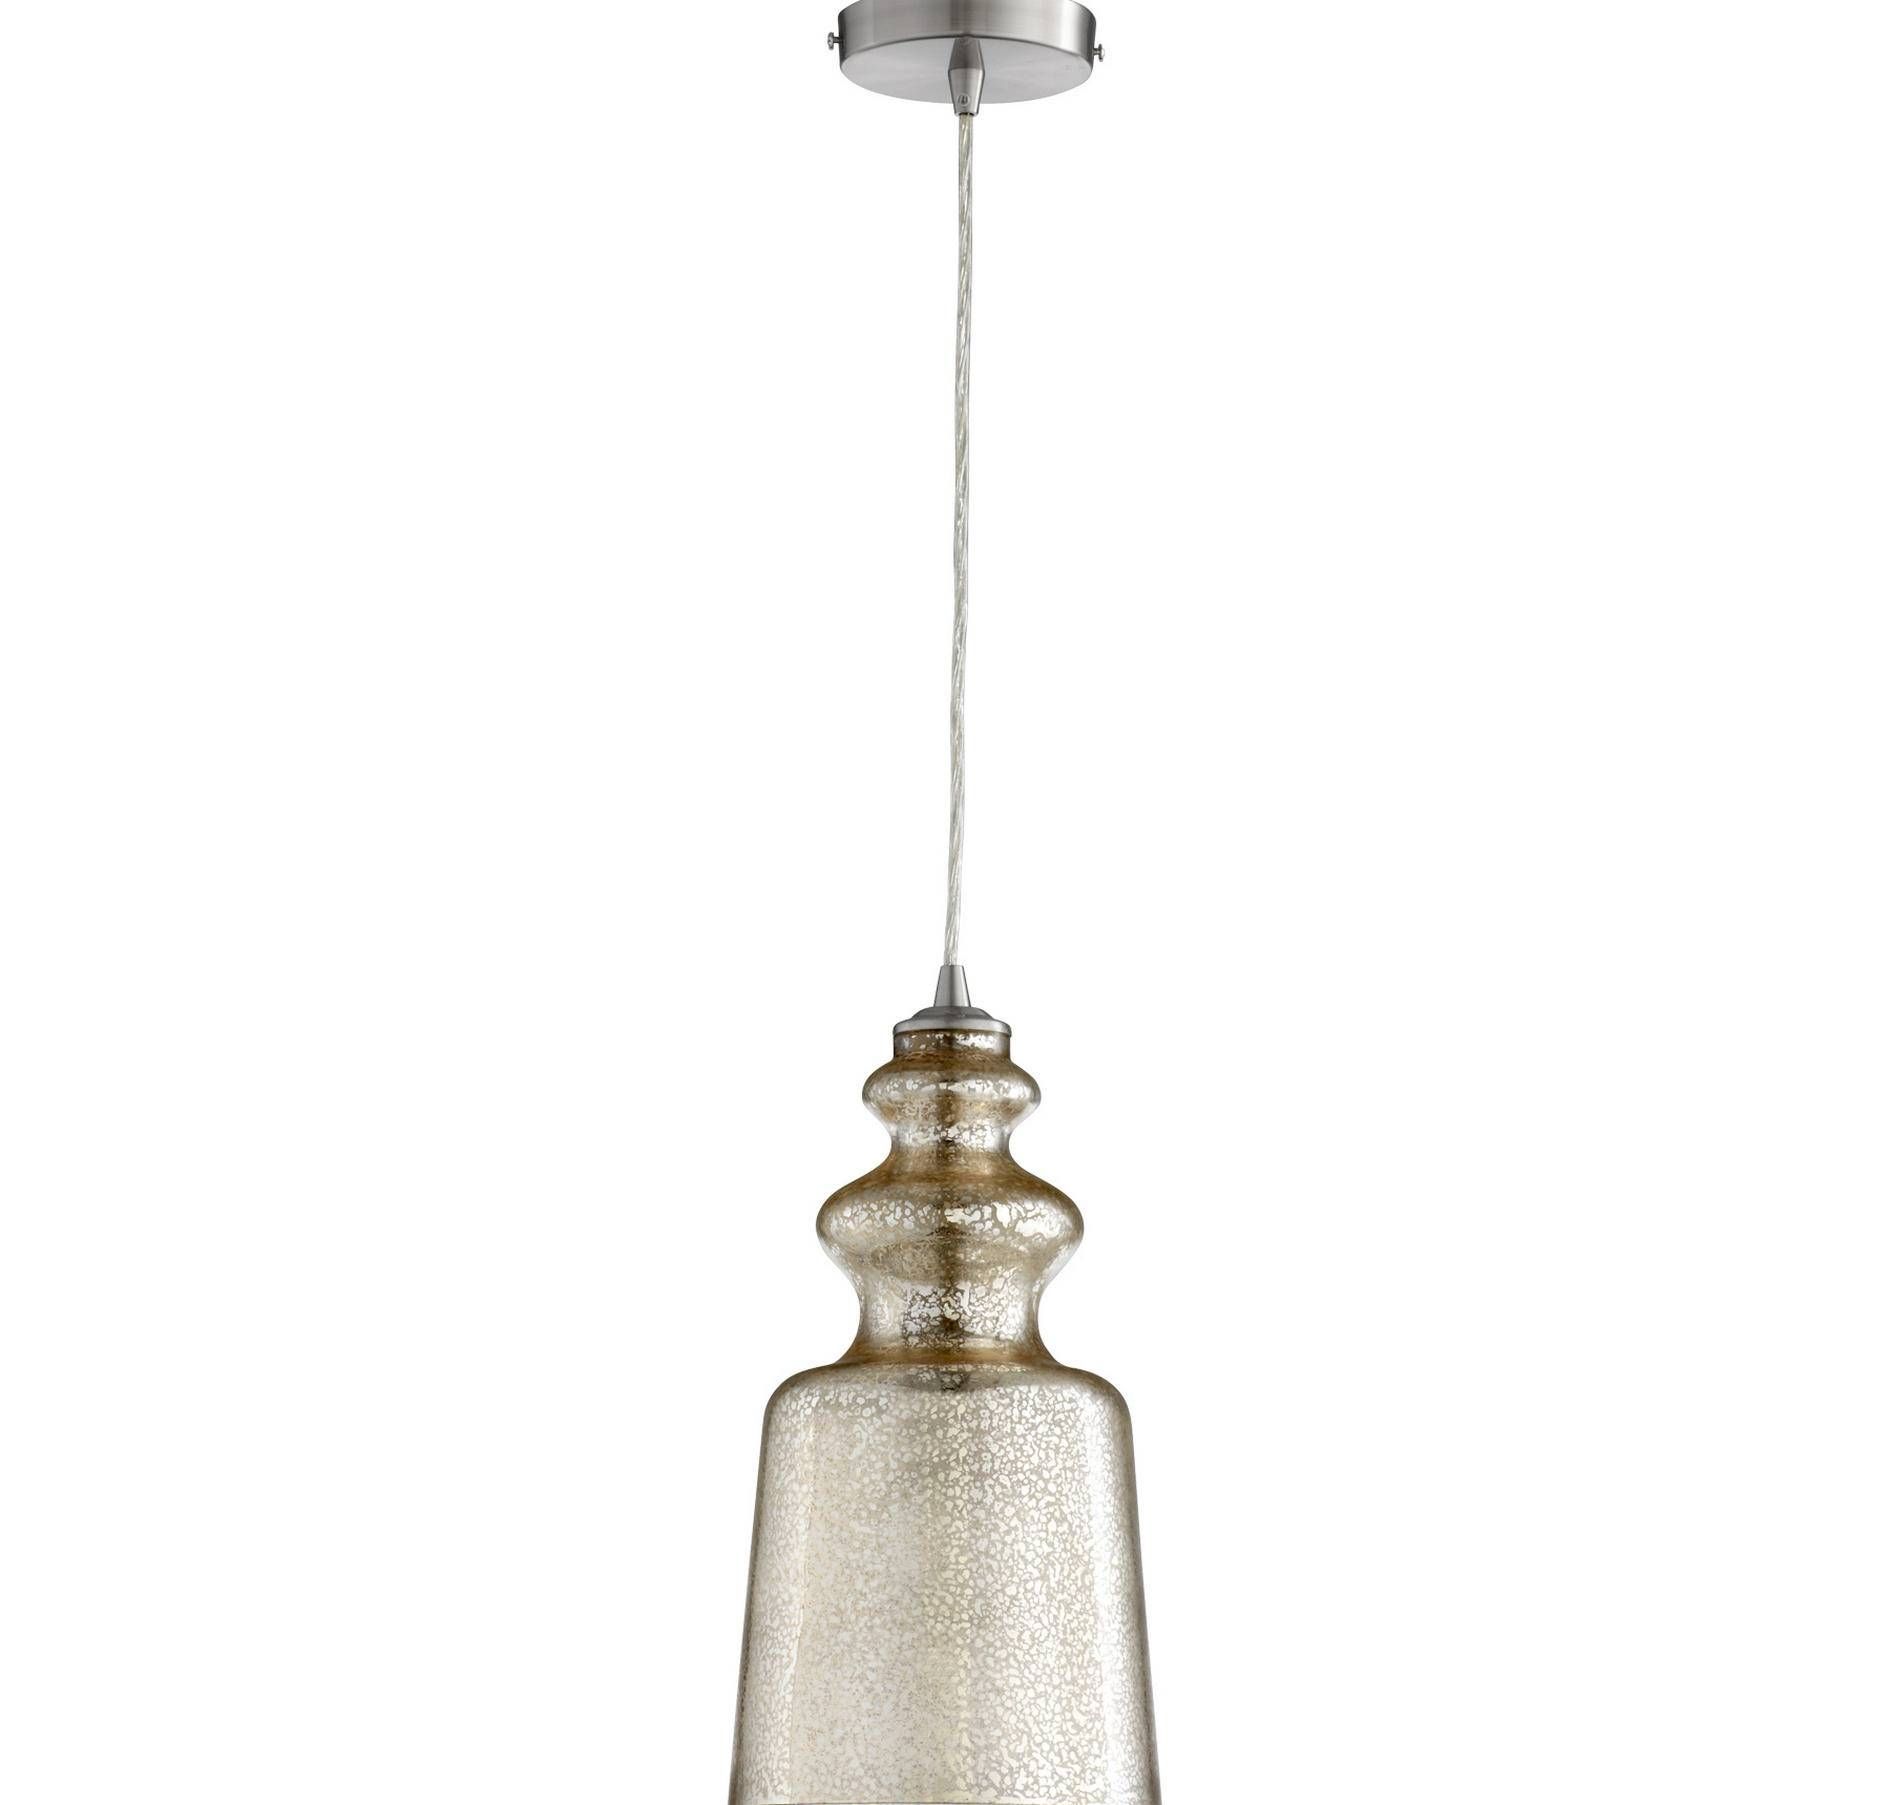 Chandelier: Great Mercury Glass Pendant Lights | Cool Mercury Intended For Mercury Glass Pendant Lights Fixtures (View 5 of 15)